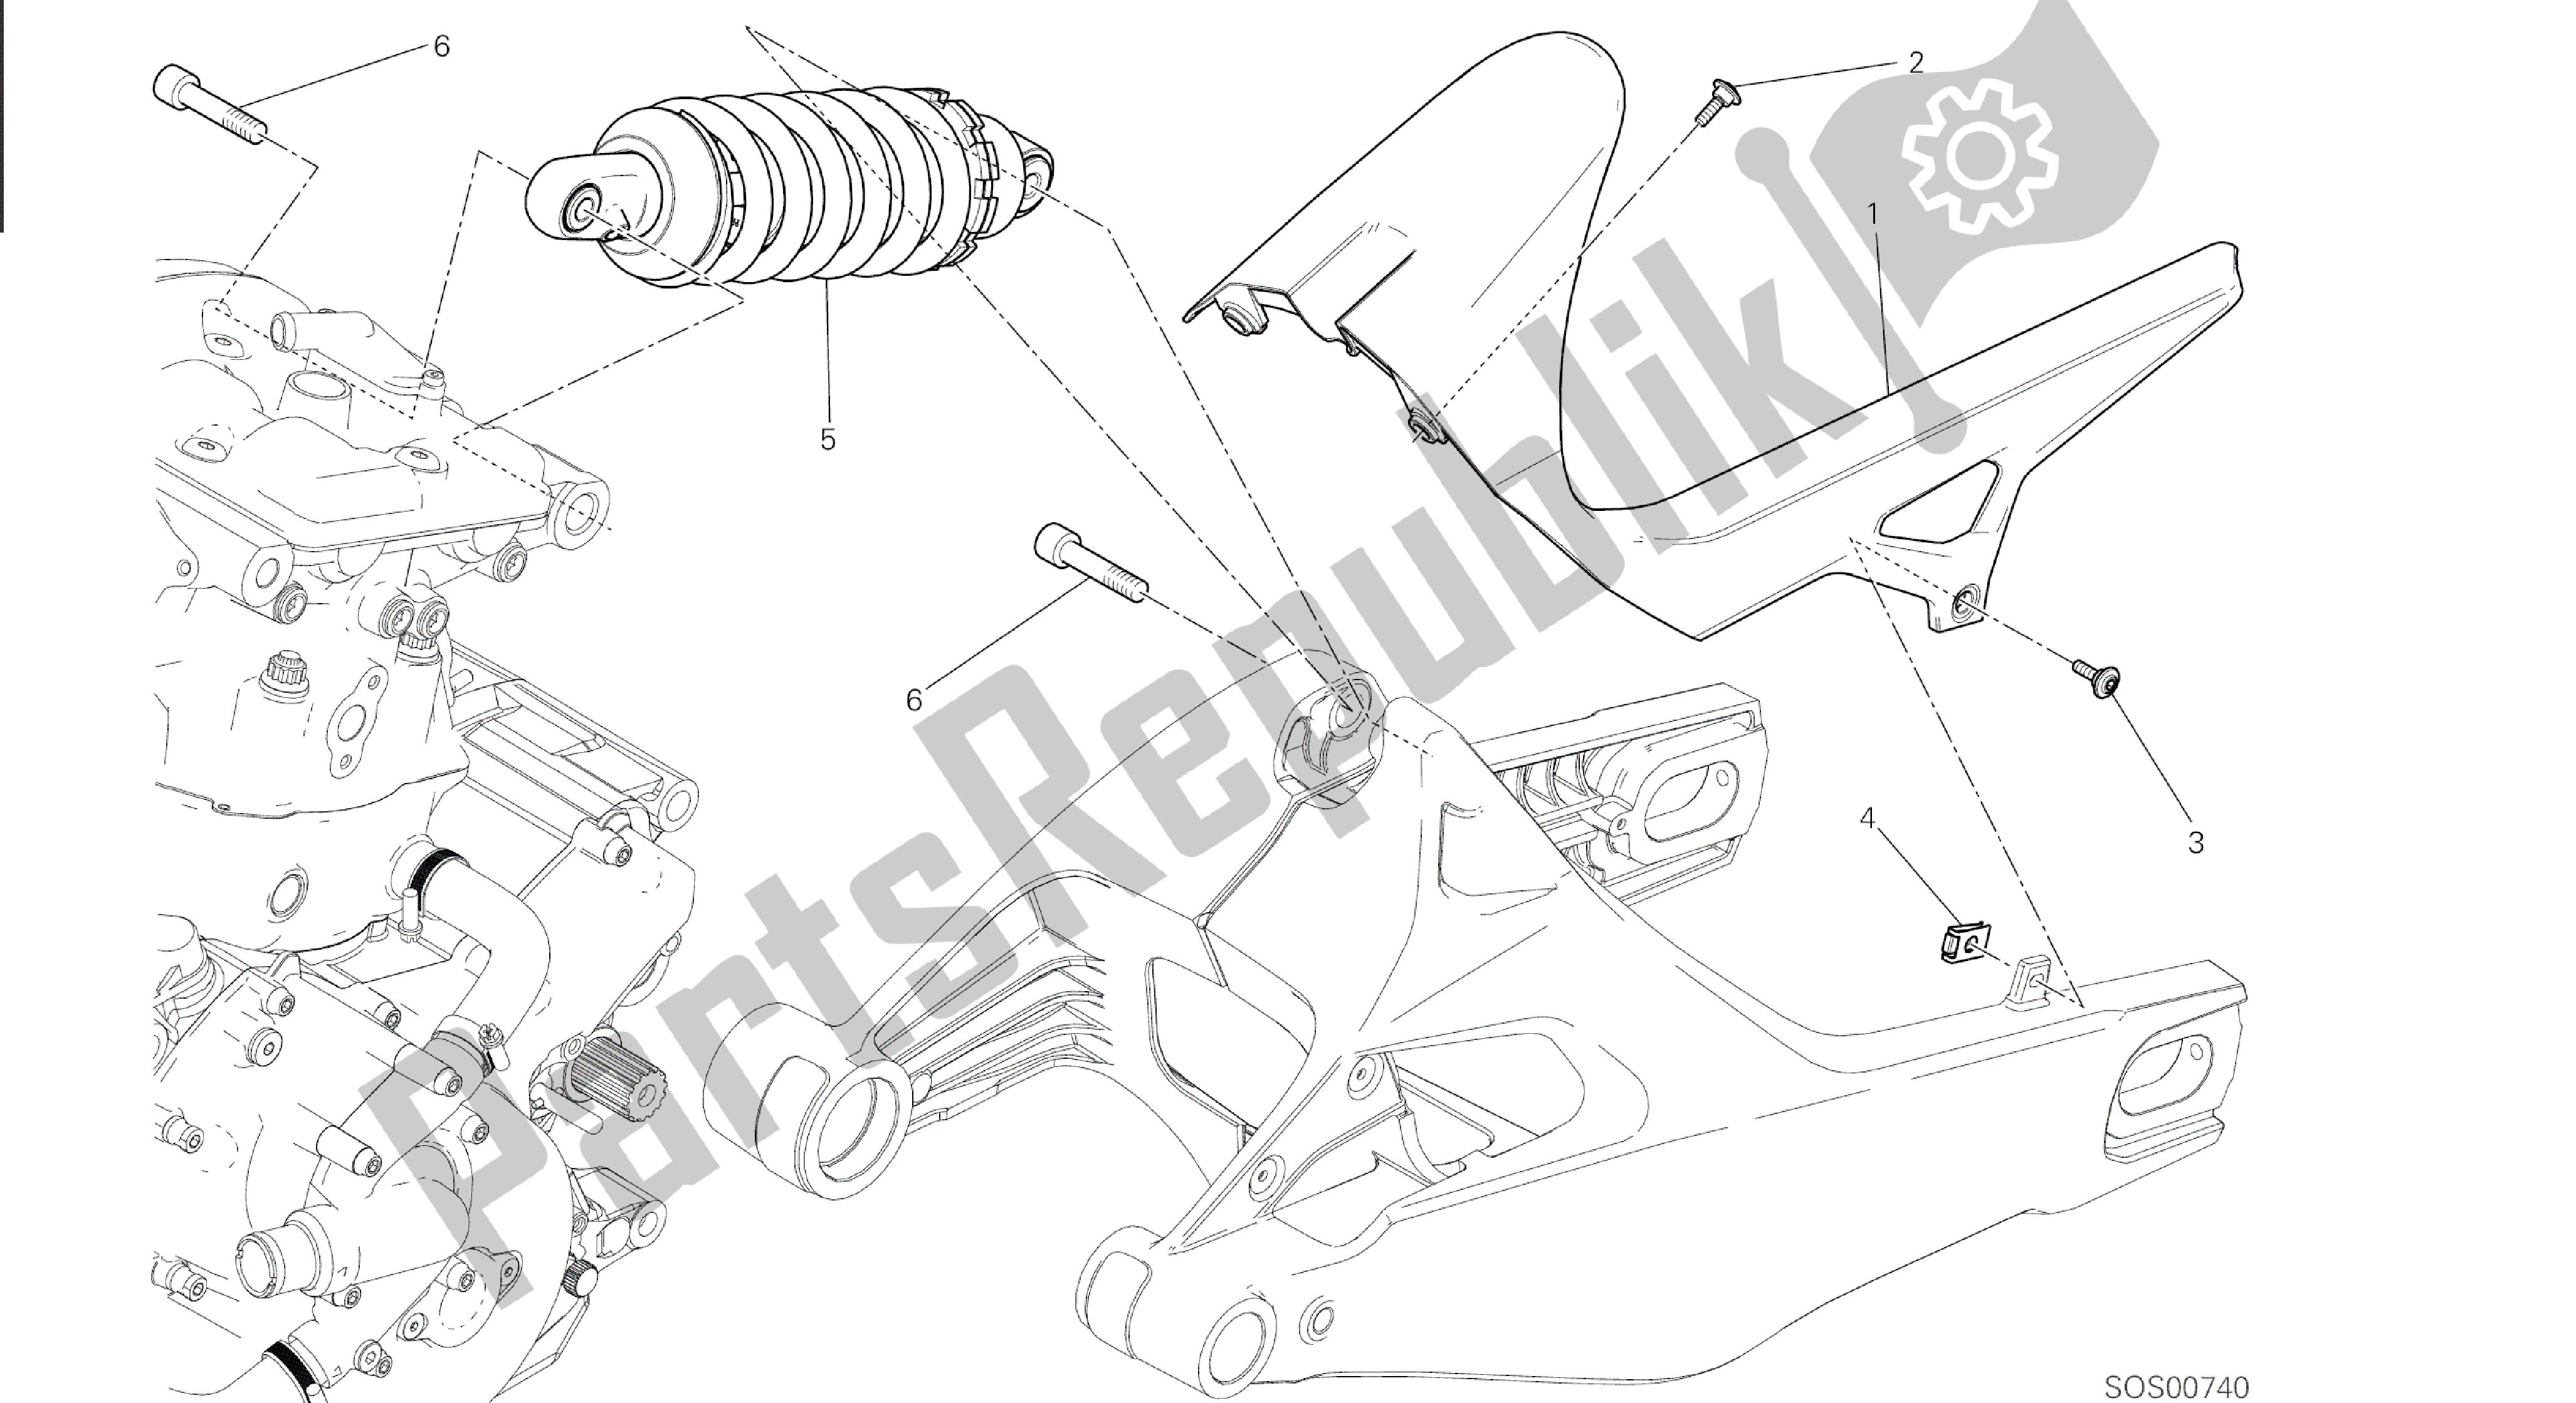 Alle onderdelen voor de Tekening 028 - Sospensione Posteriore [mod: M 821] Groepsframe van de Ducati Monster 821 2015